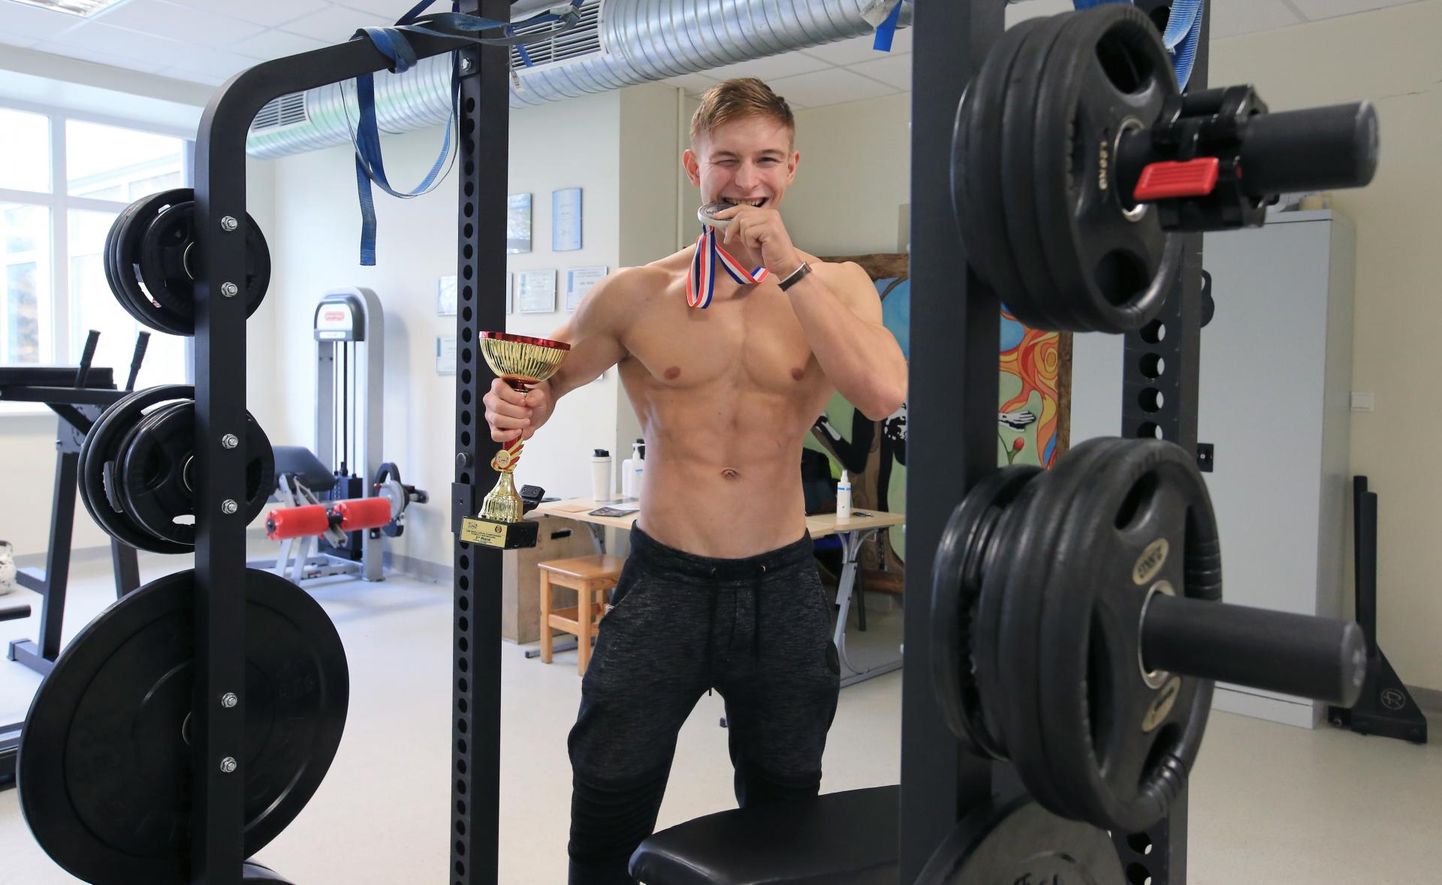 Rasmus Klaos võitis möödunud nädalavahetusel juunioride vanuseklassis kulturismi ja fitnessi maailmameistrivõistlustel teise koha. See on siiani tema karjääri suurim saavutus.